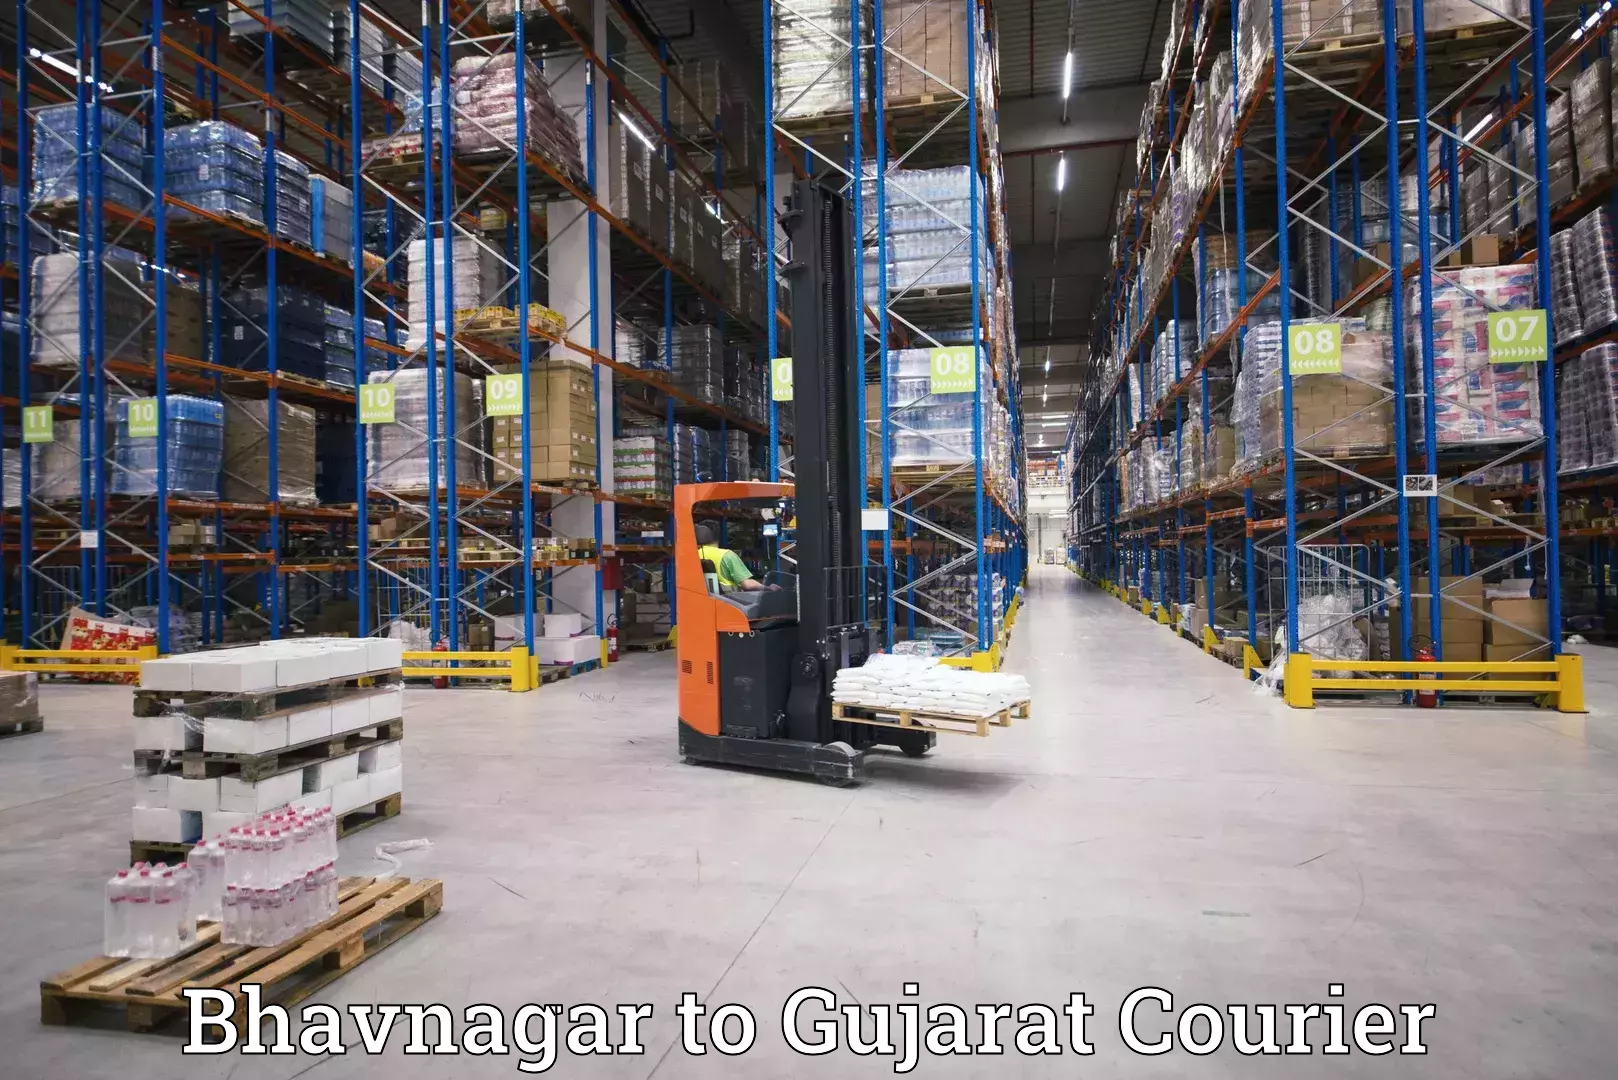 Reliable courier services Bhavnagar to Vadodara